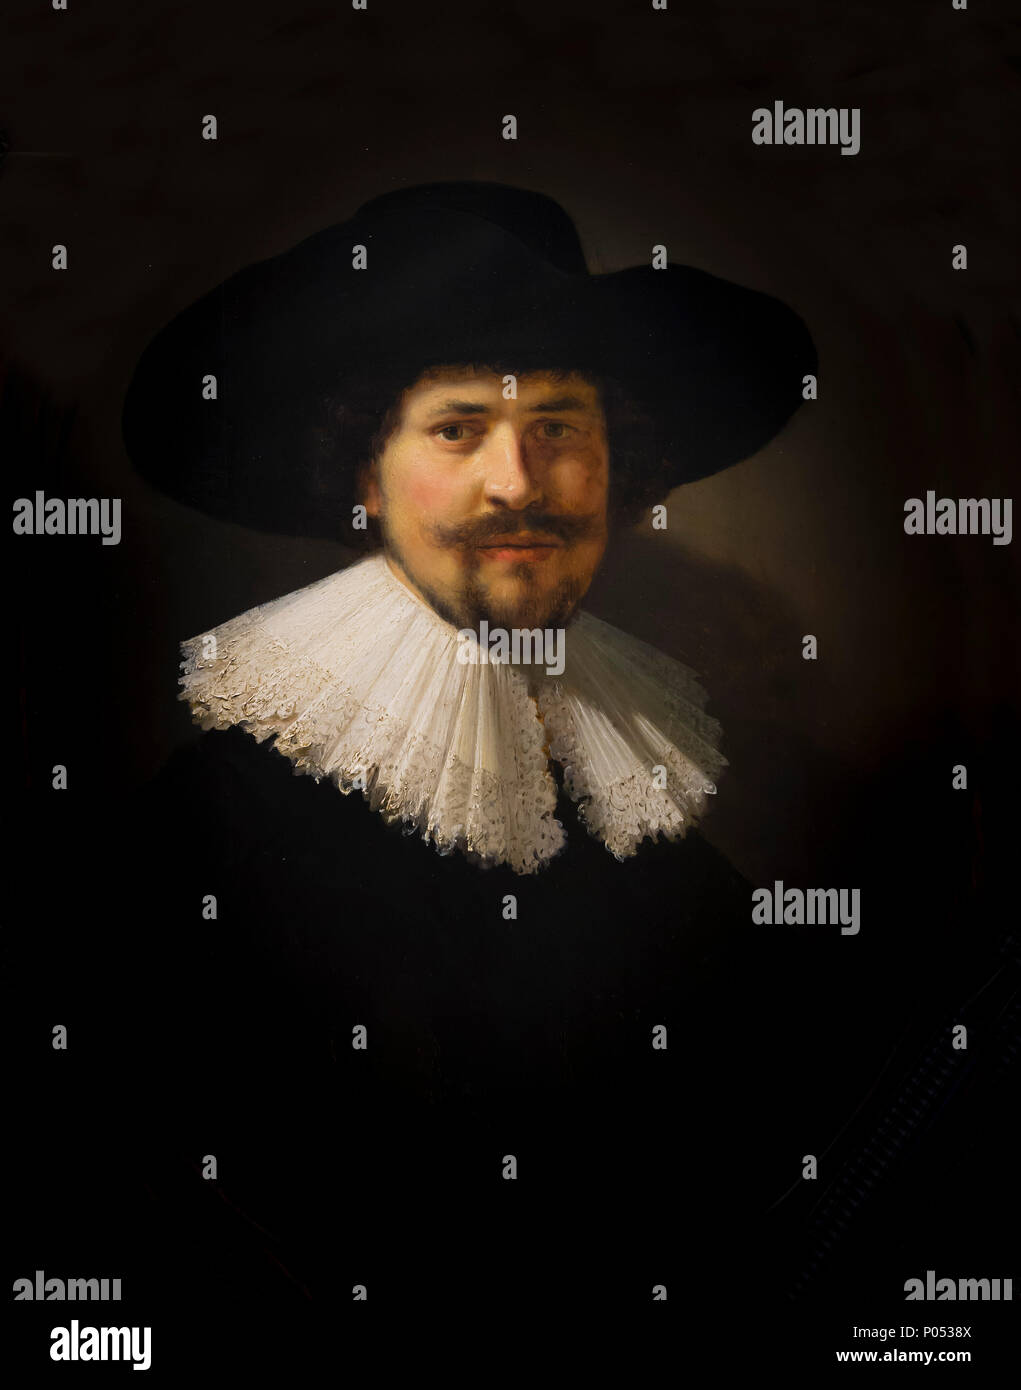 Porträt der Mann mit dem schwarzen Hut, Rembrandt, 1634, Museum der Bildenden Künste, Boston, Mass, USA, Nordamerika Stockfoto